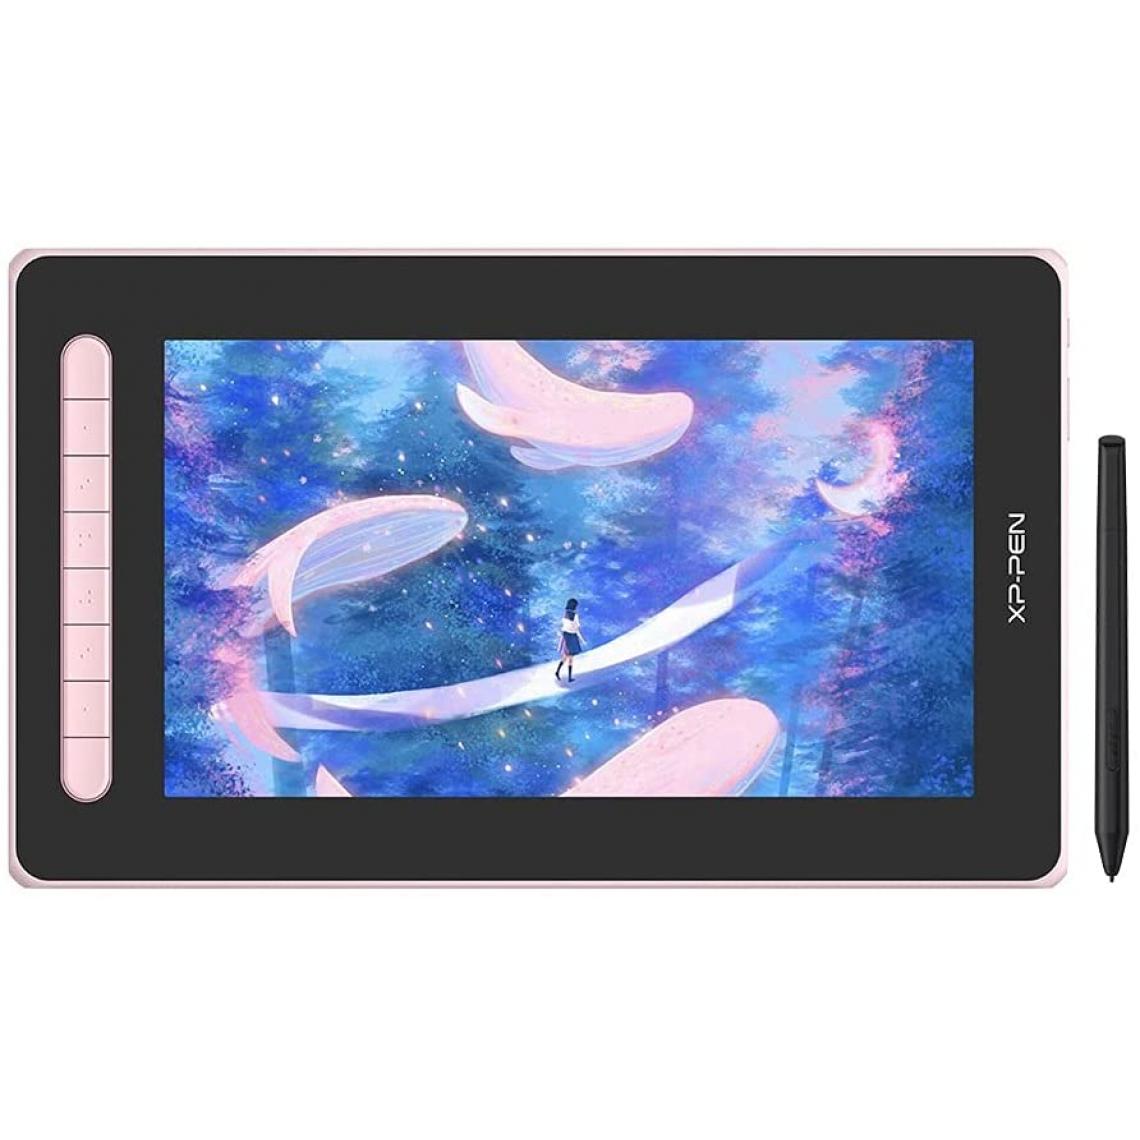 Xp-Pen - XP-PEN Tablette Graphique Artist 12 2nd Generation 127% sRGB Stylet X3 avec Deux Ports Flexibles Compatible avec Android Chrombook Linux - Rose - Tablette Graphique